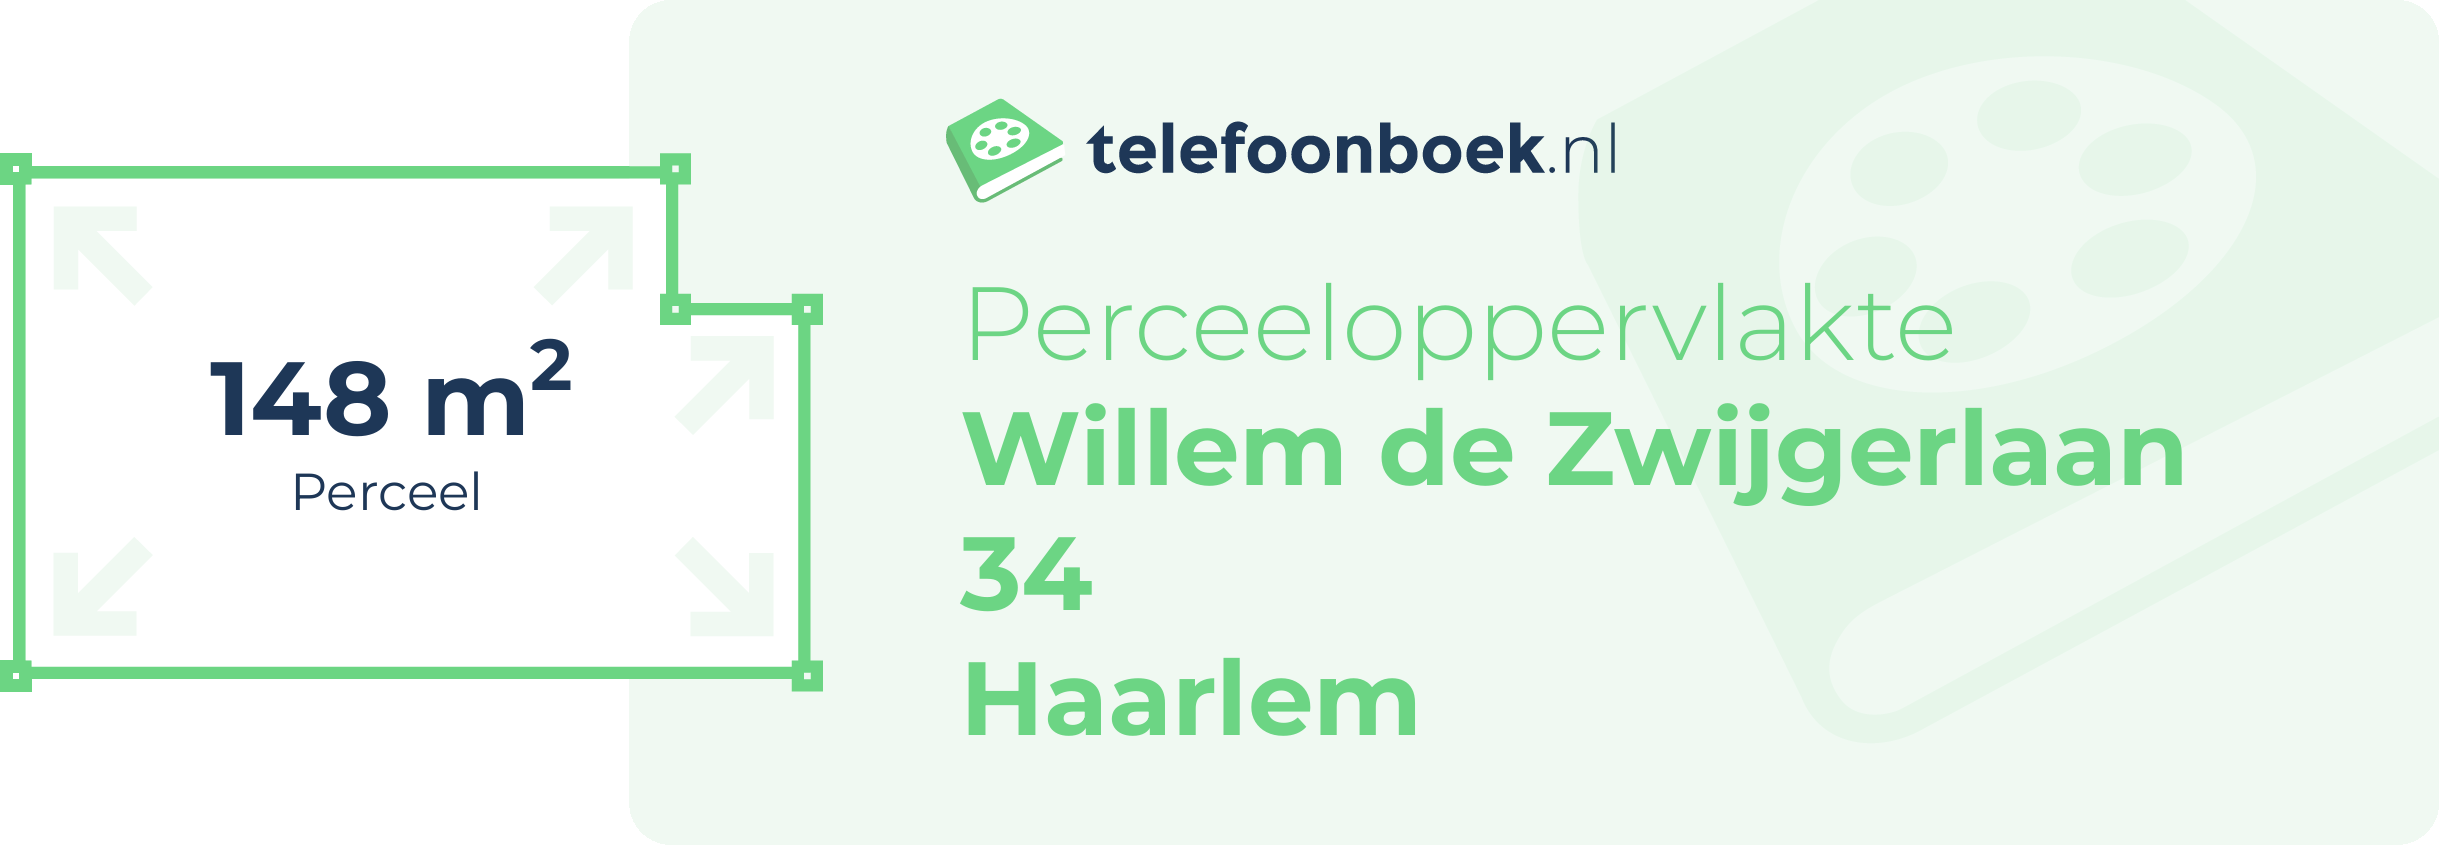 Perceeloppervlakte Willem De Zwijgerlaan 34 Haarlem